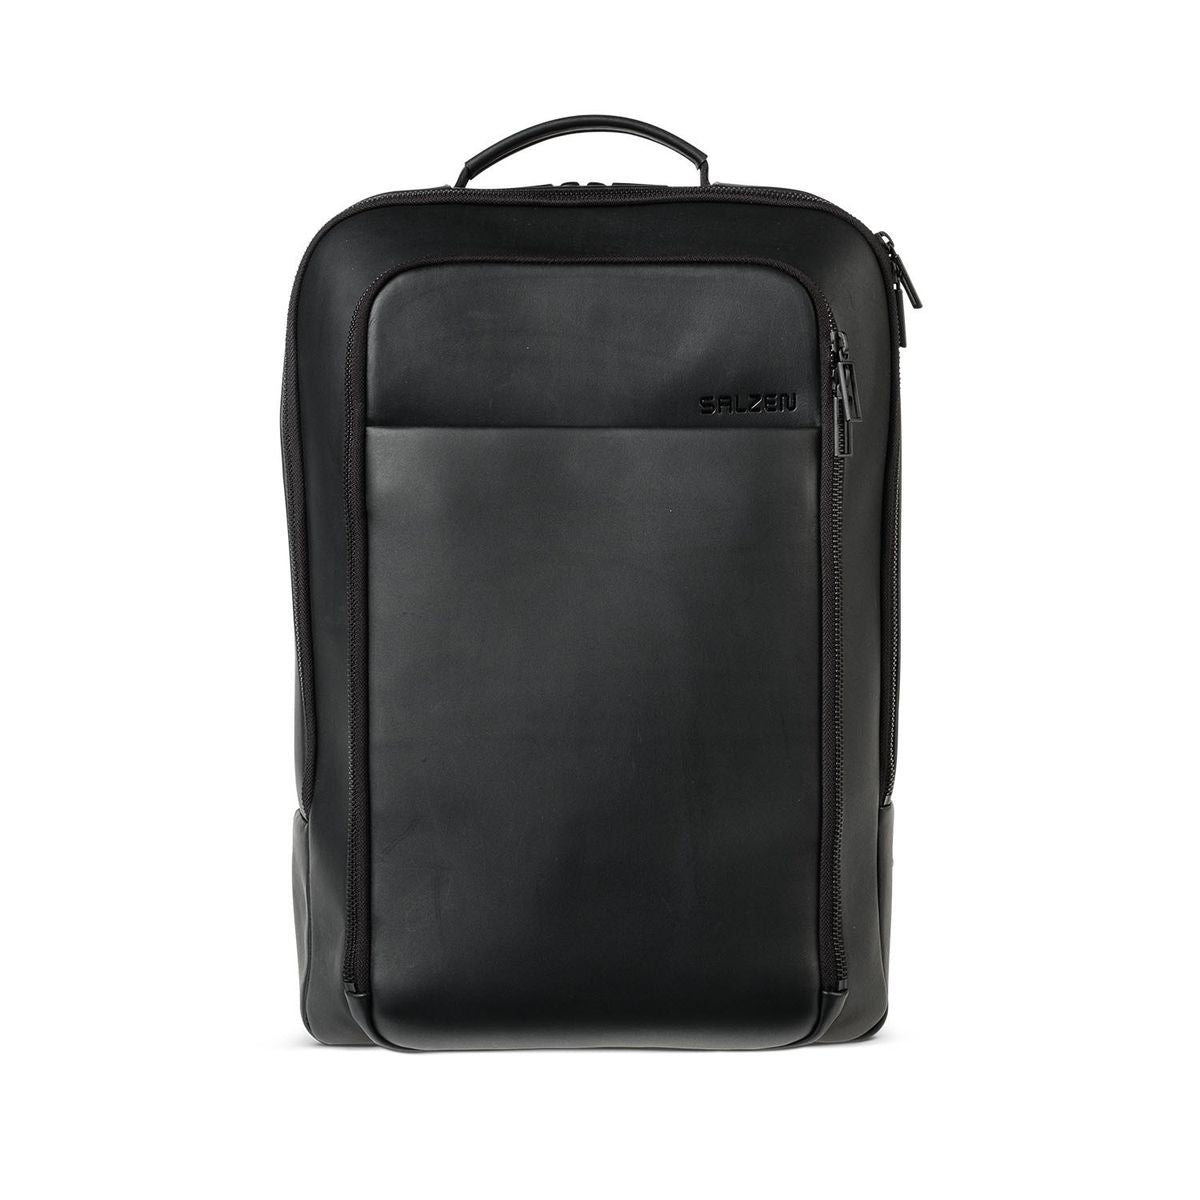 SALZEN Business Backpack Total Black